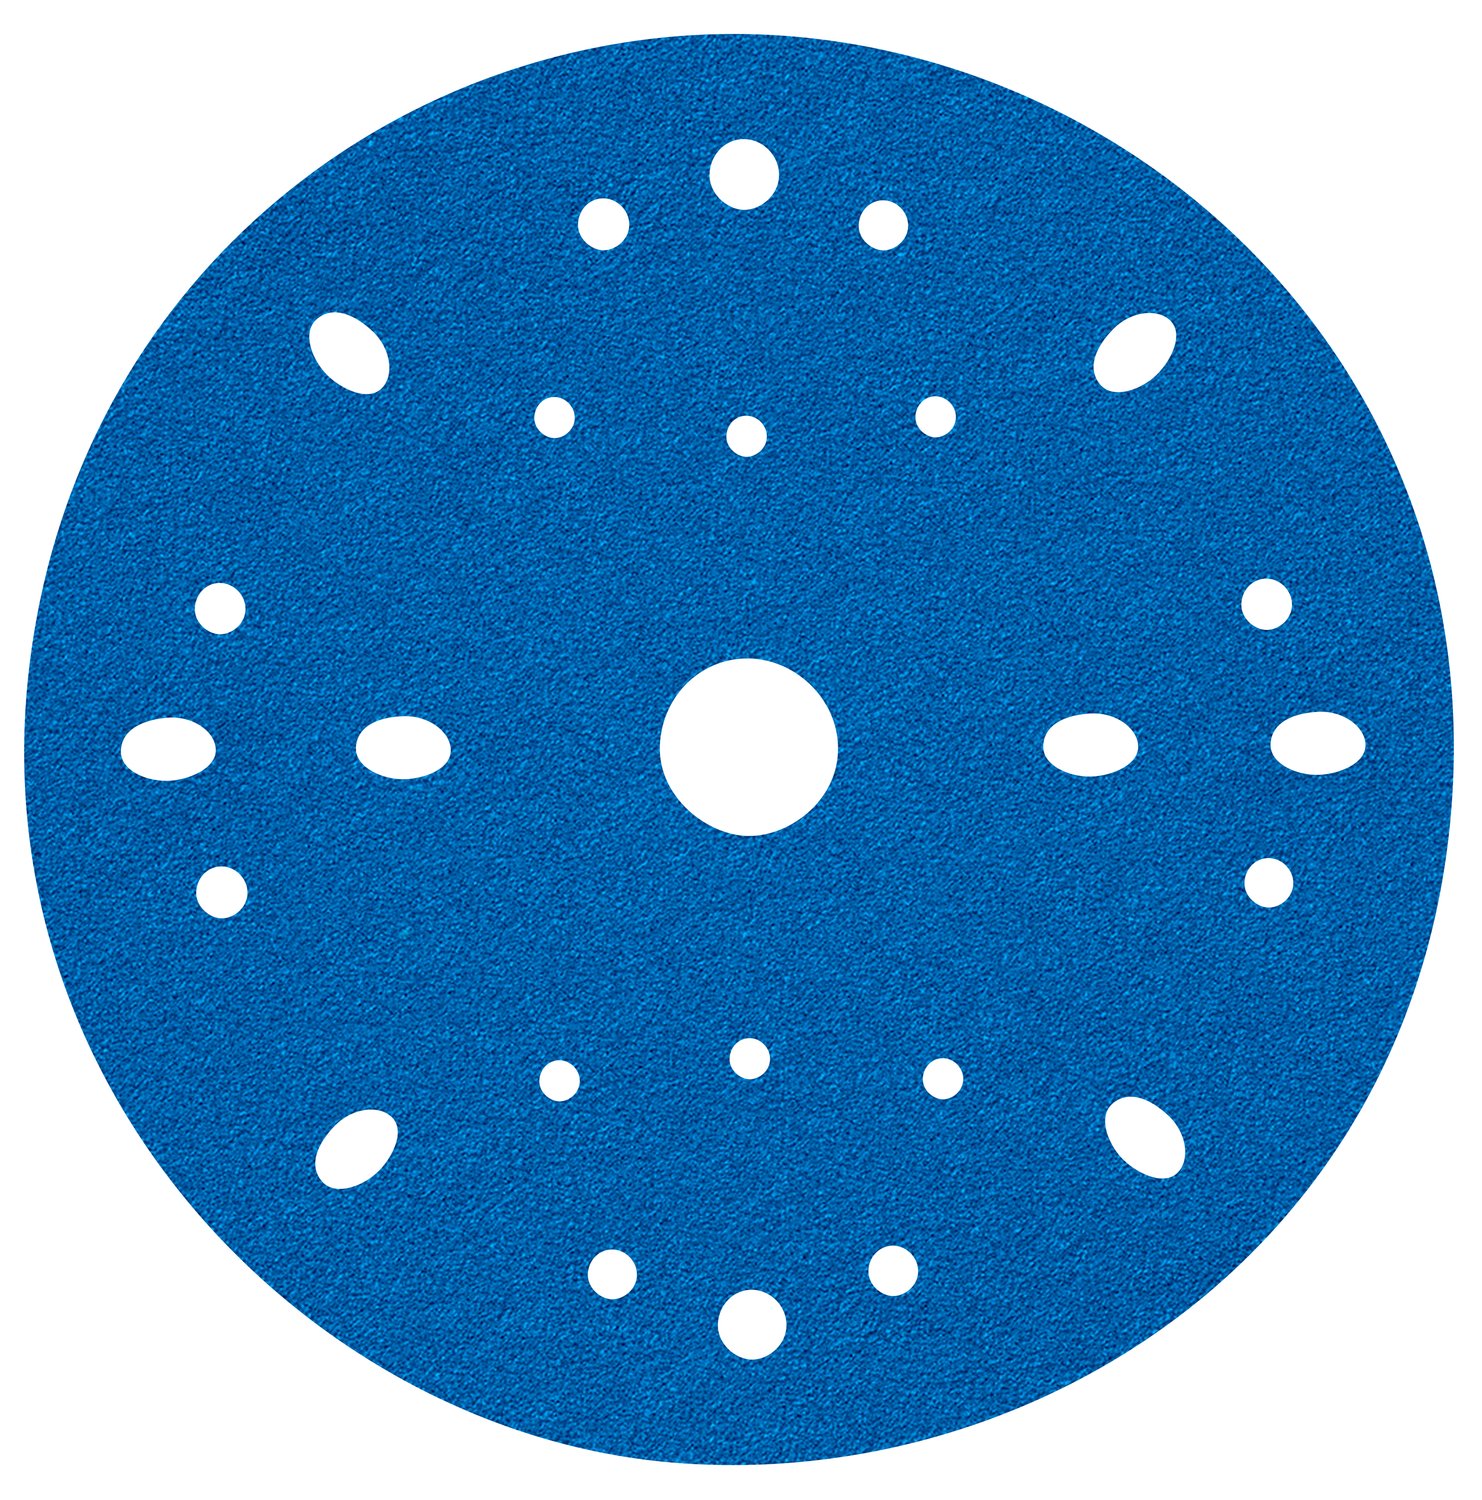 7100091243 - 3M Hookit Blue Abrasive Disc Multi-hole, 36170, 6 in, 40 grade, 50
discs per carton, 4 cartons per case